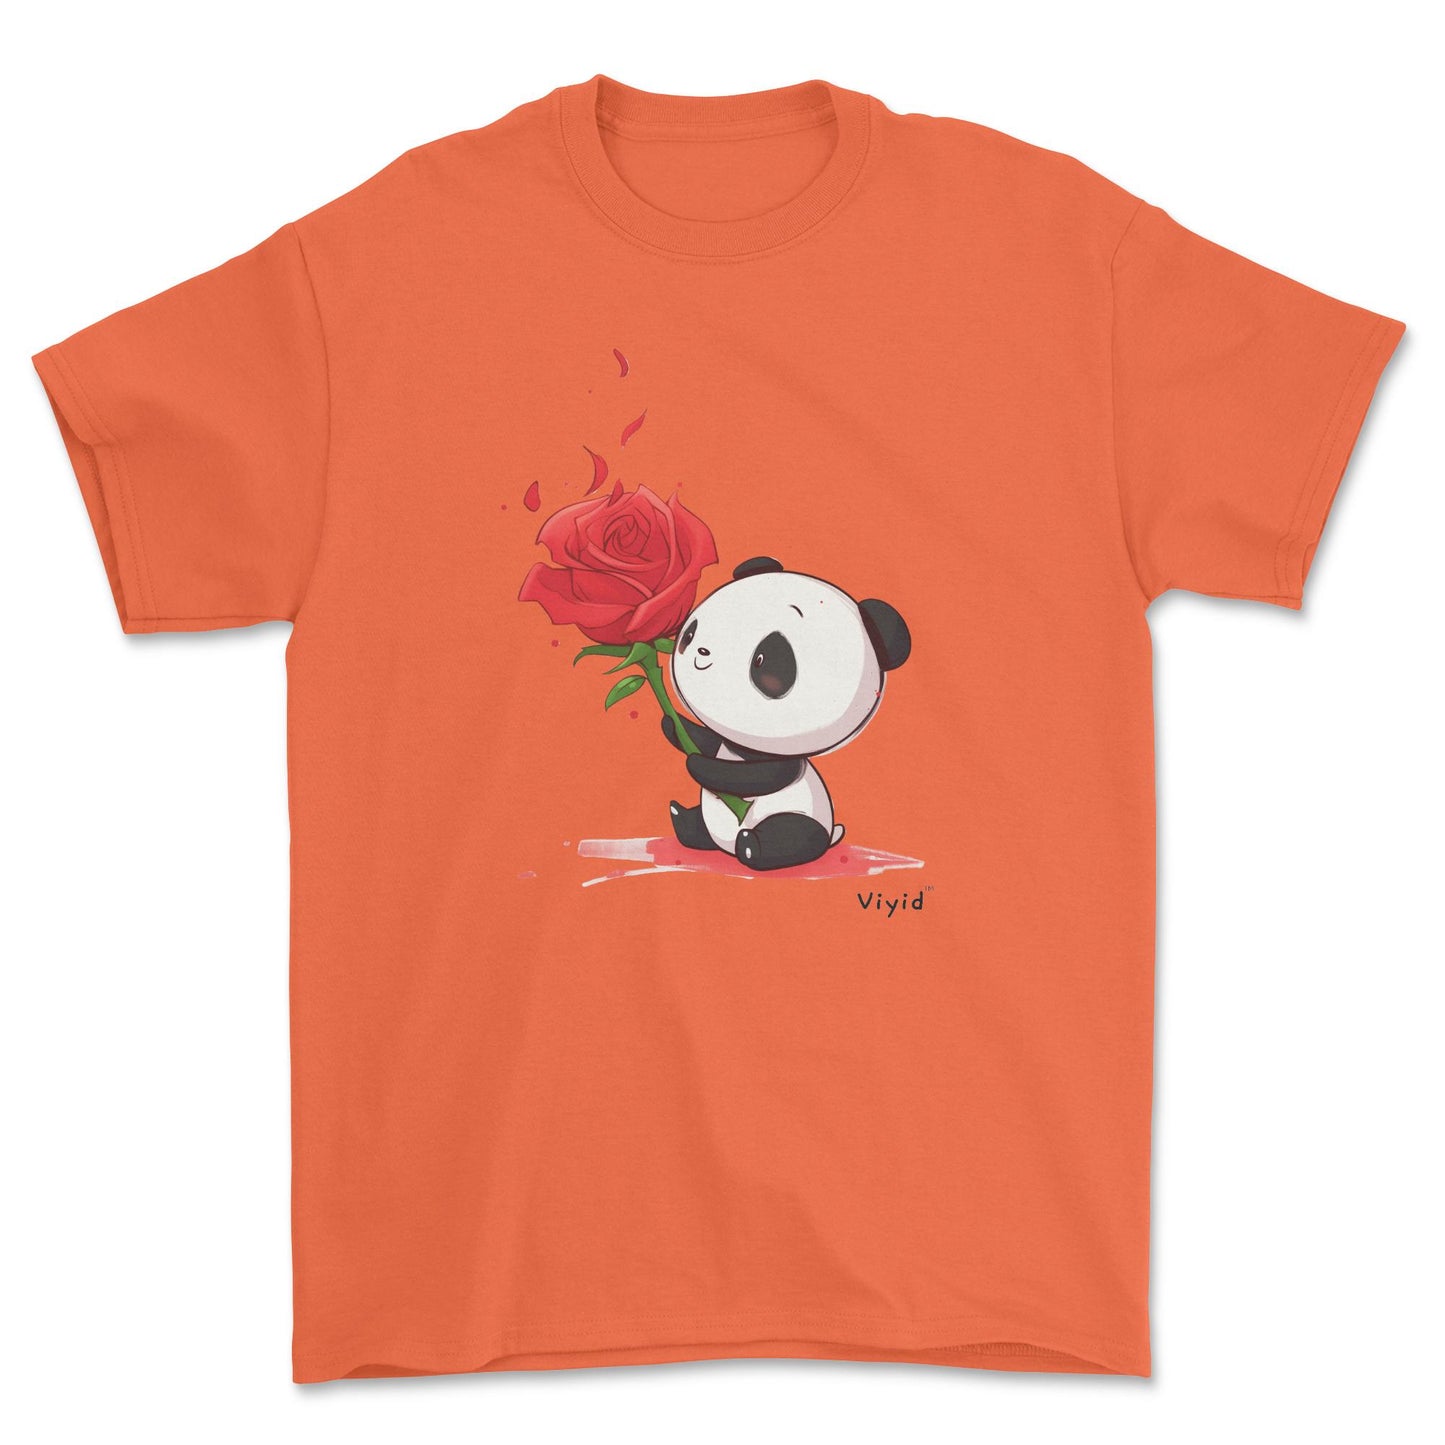 rose holding panda adult t-shirt orange